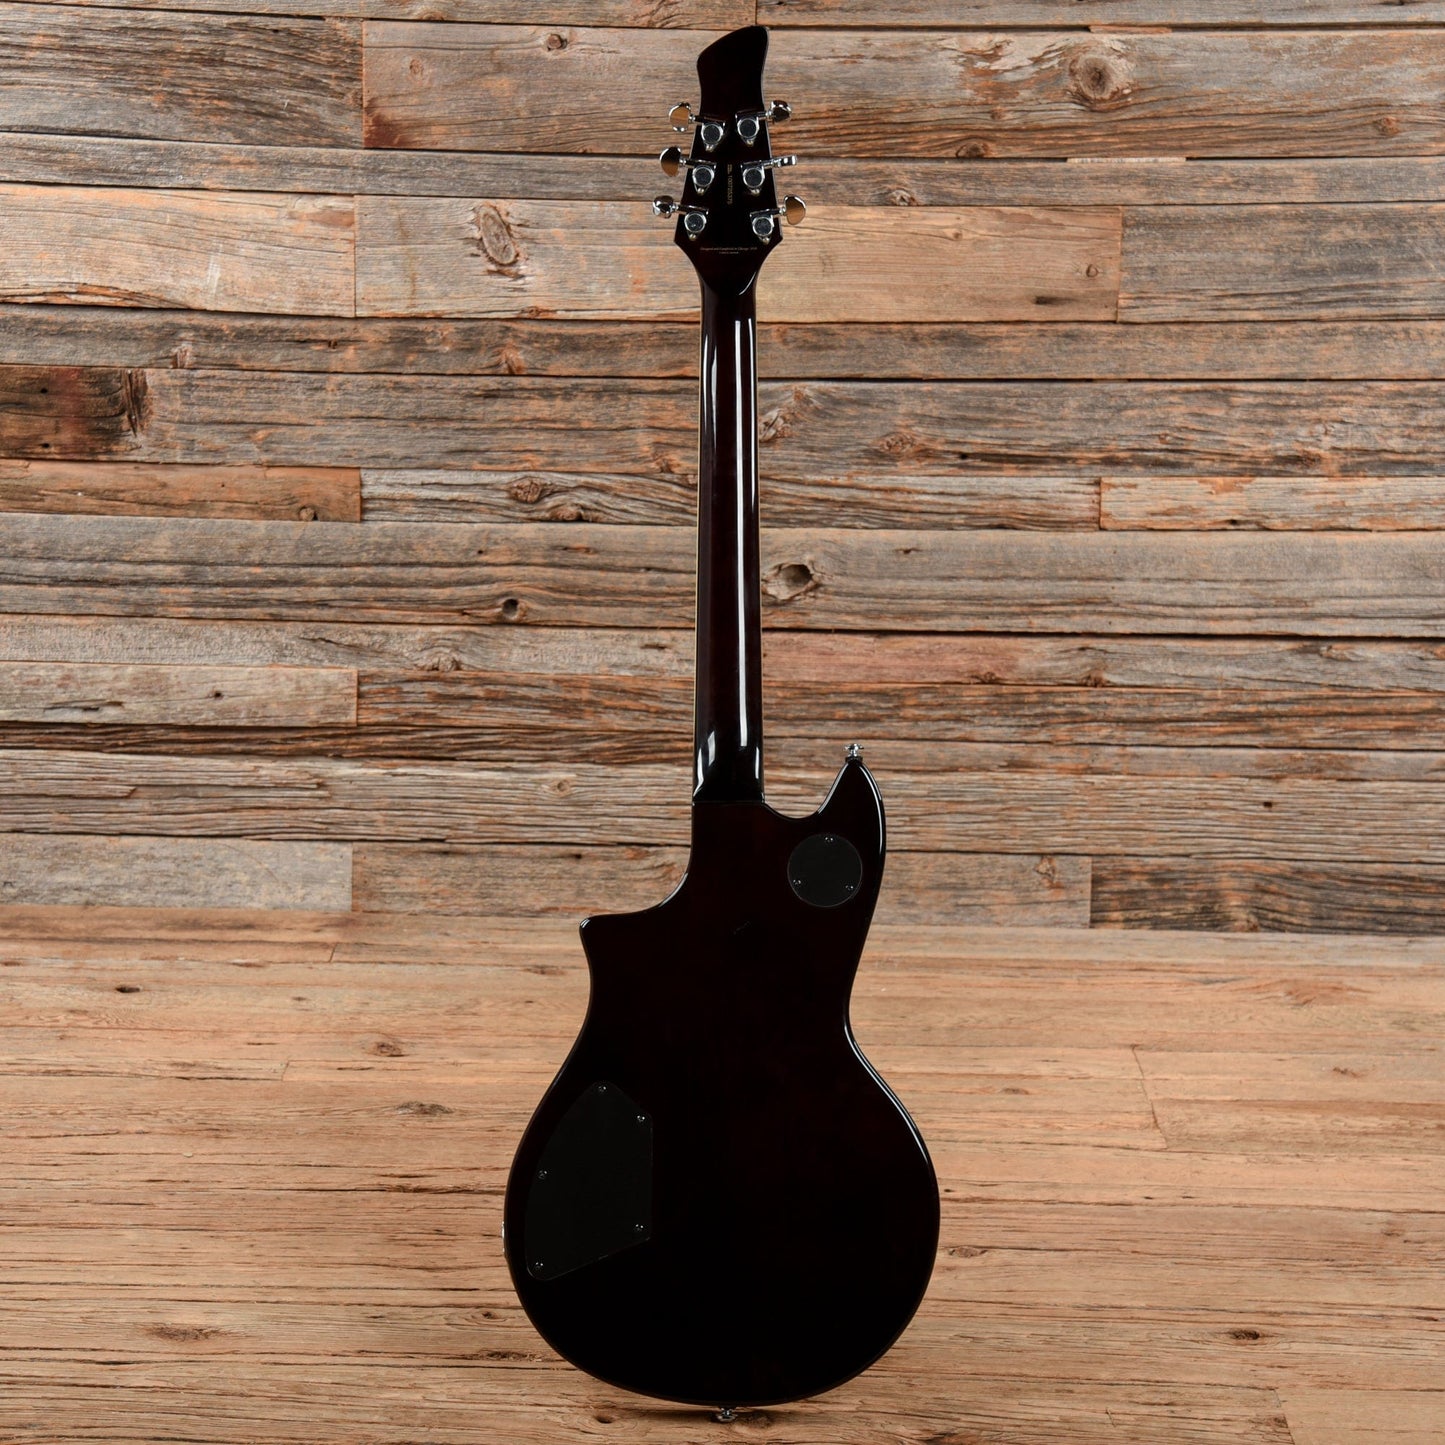 Hanson Gatto Deluxe Sunburst Electric Guitars / Solid Body